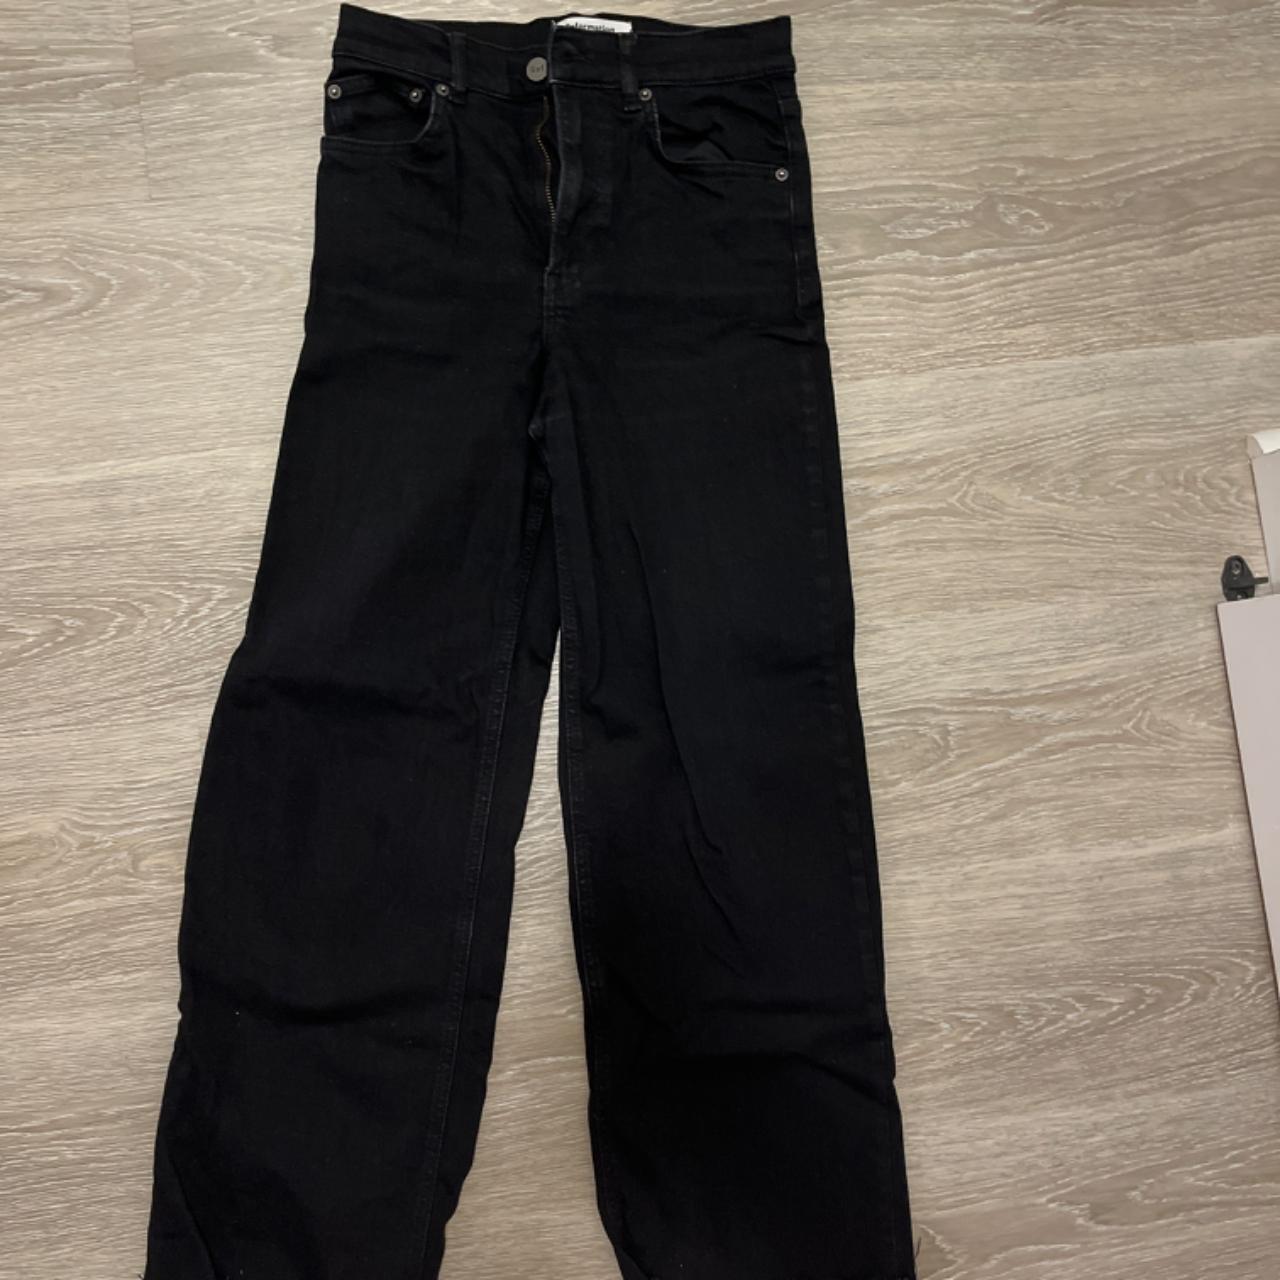 Reformation wide leg black jeans size 25 - Depop